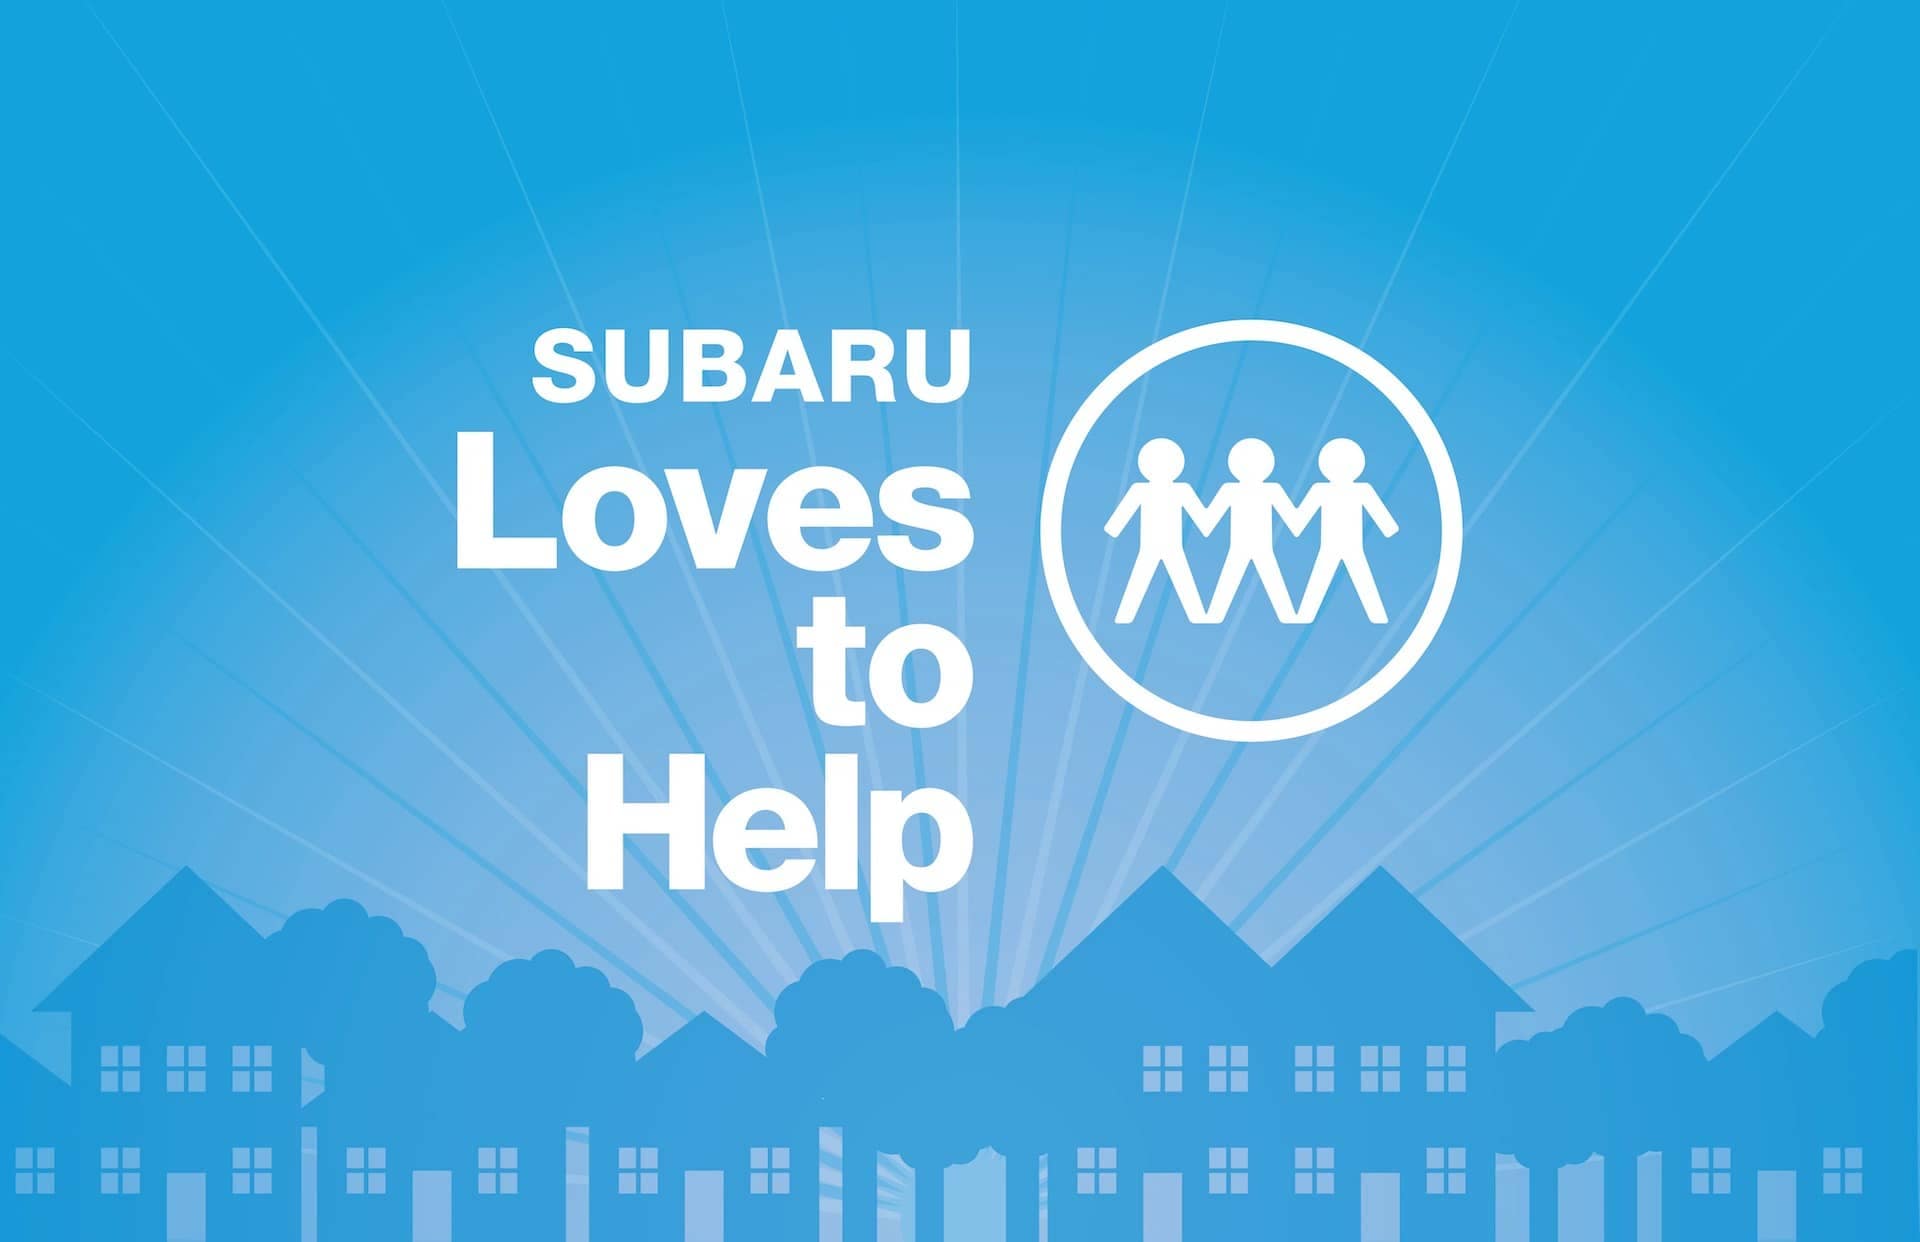 Subaru loves to help